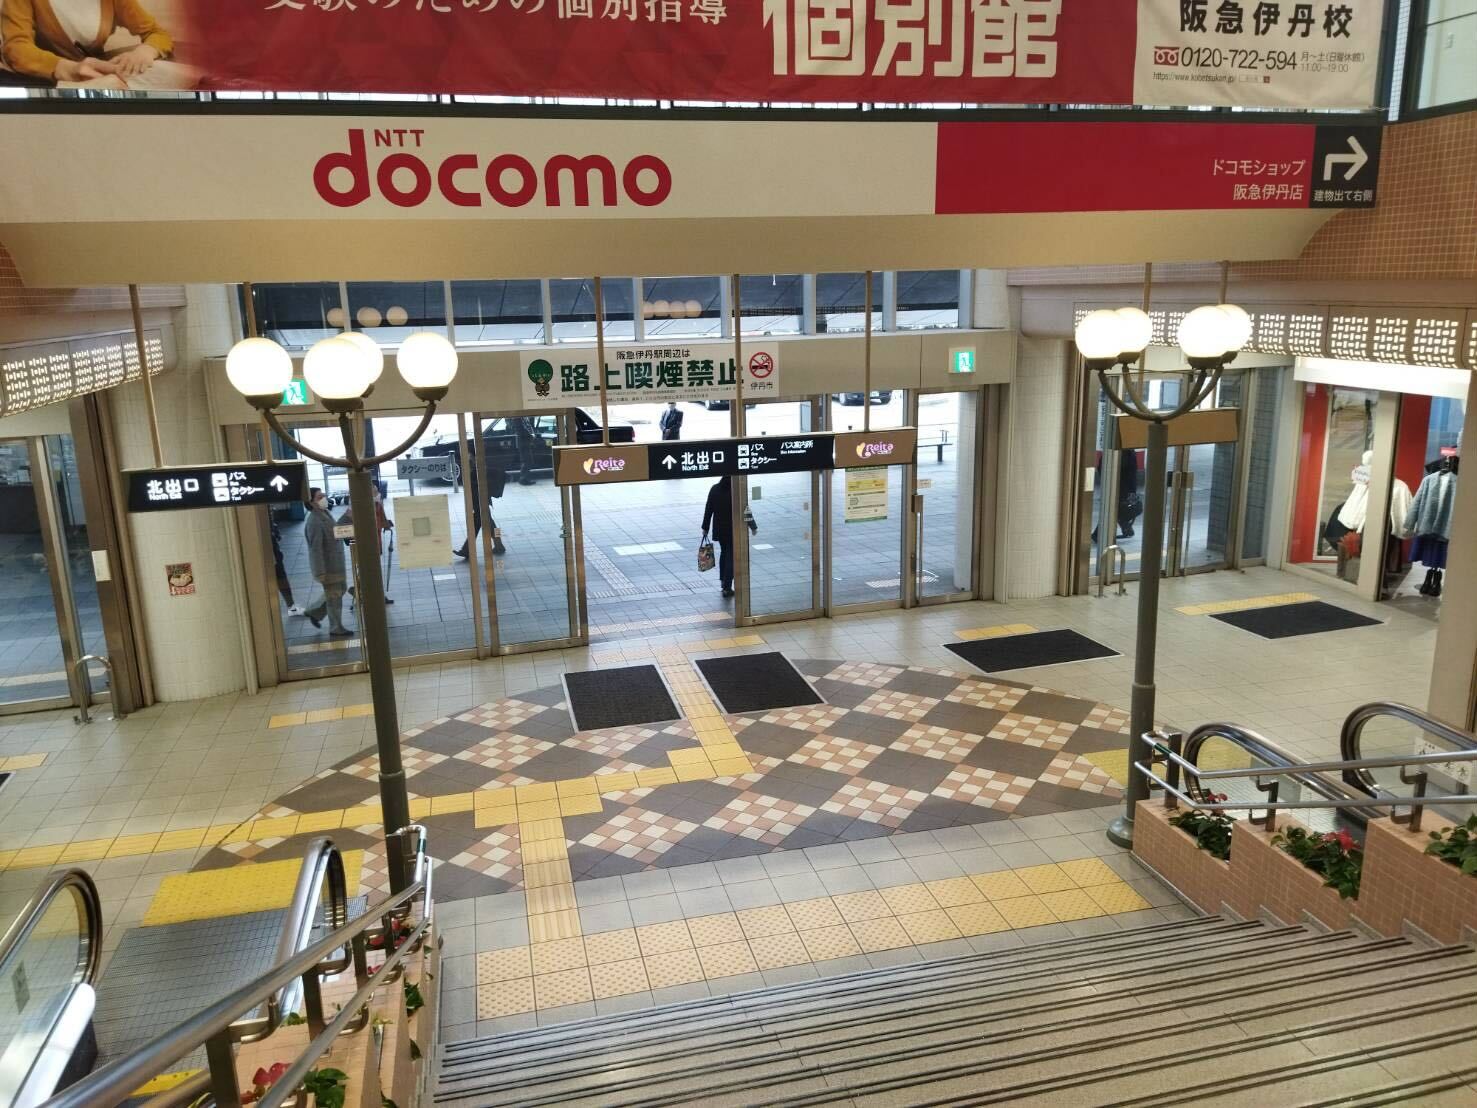 伊丹駅北出口を出て左へ曲がります。